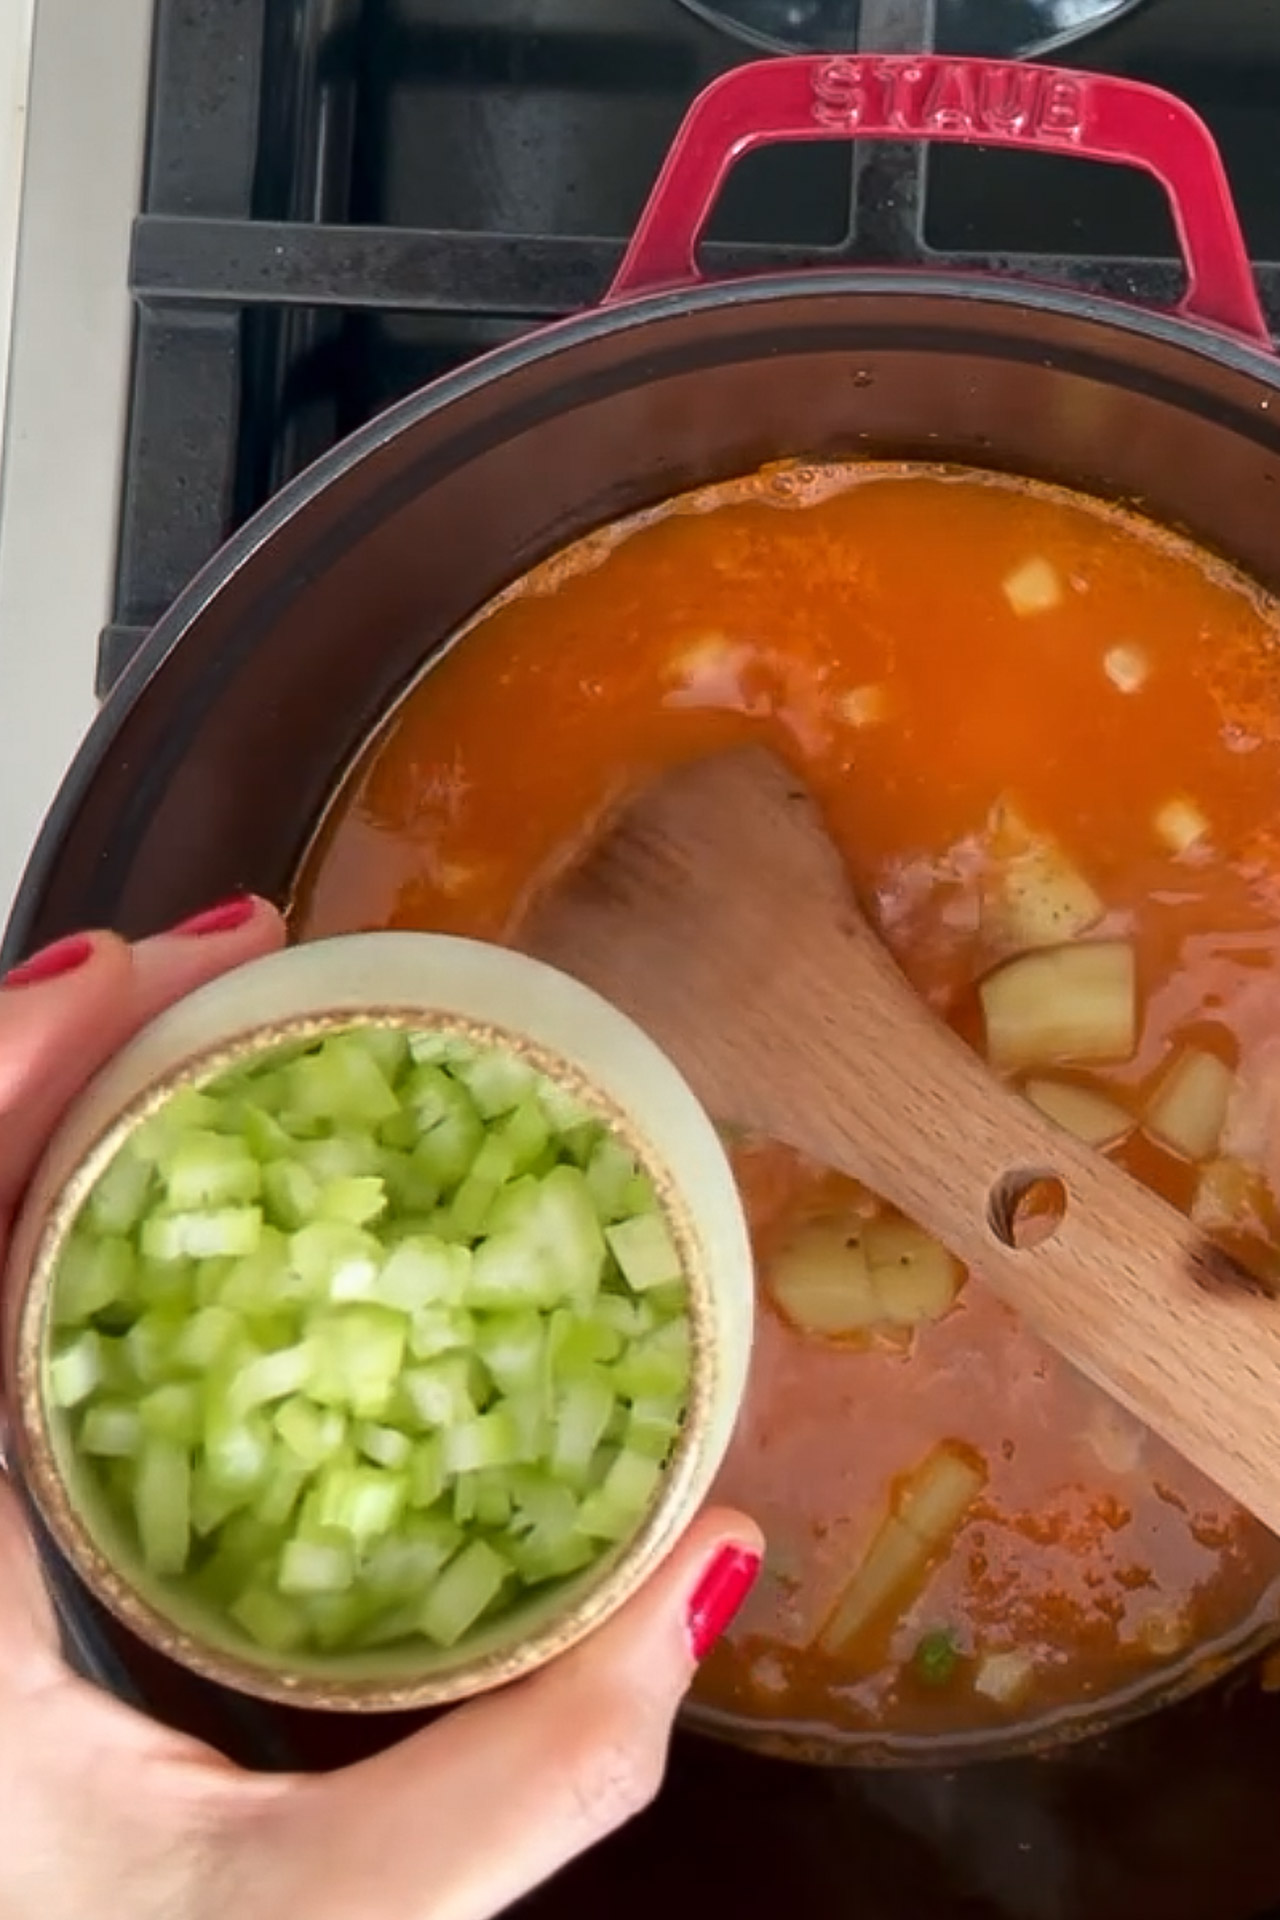 Una persona sostiene un cuenco de sopa sana con verduras.